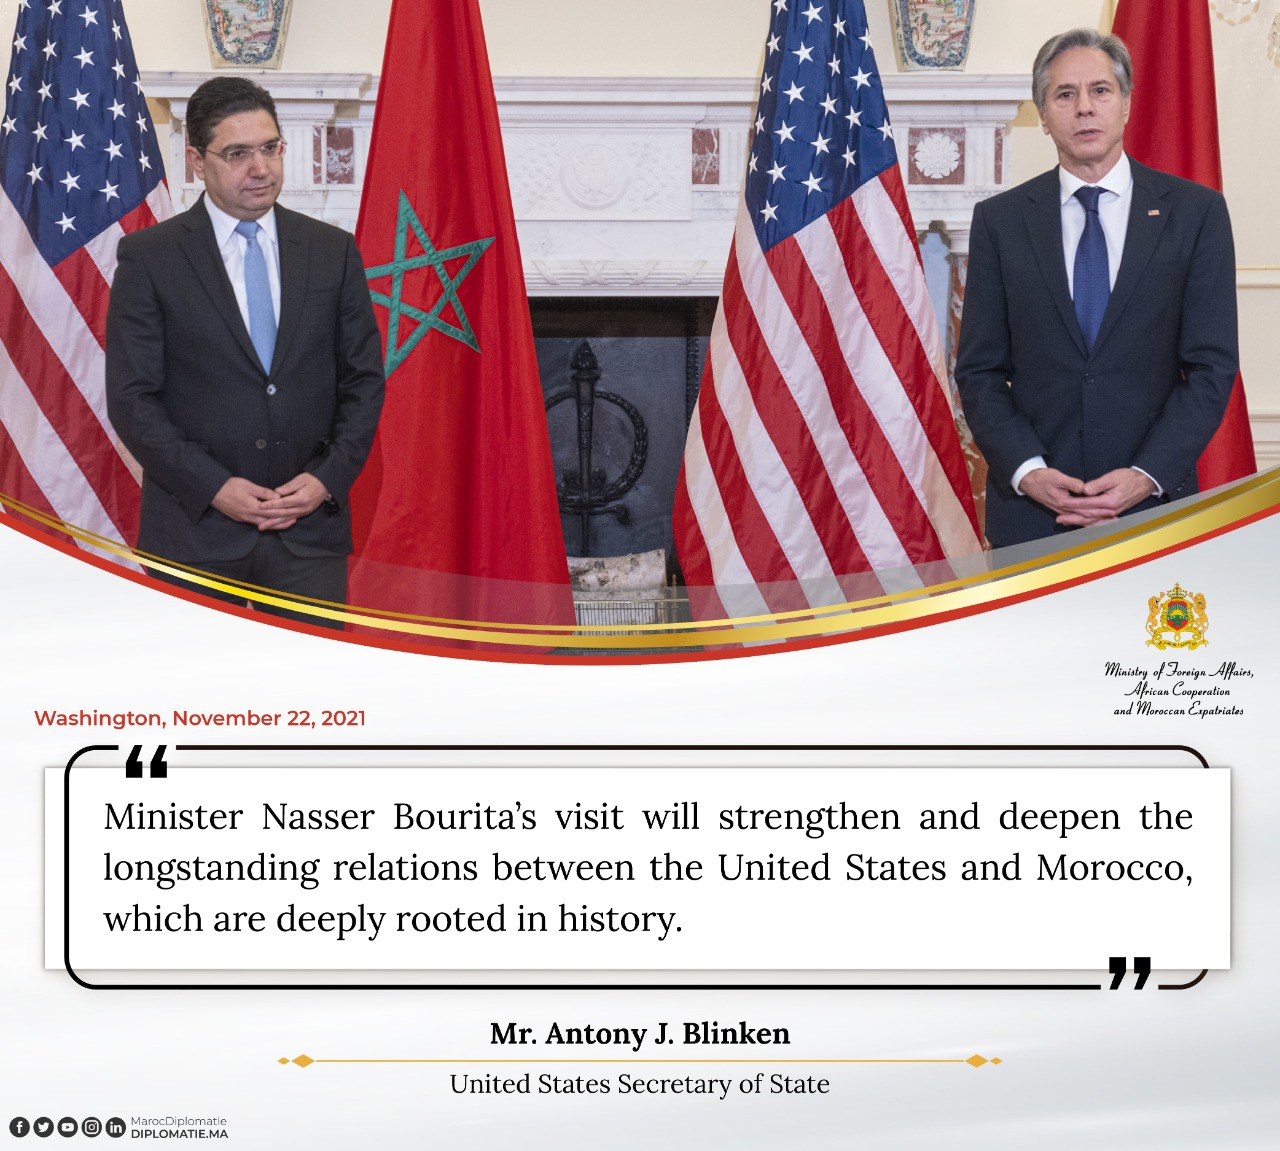 Statement by Mr. Antony J. Blinken, US Secretary of State. 